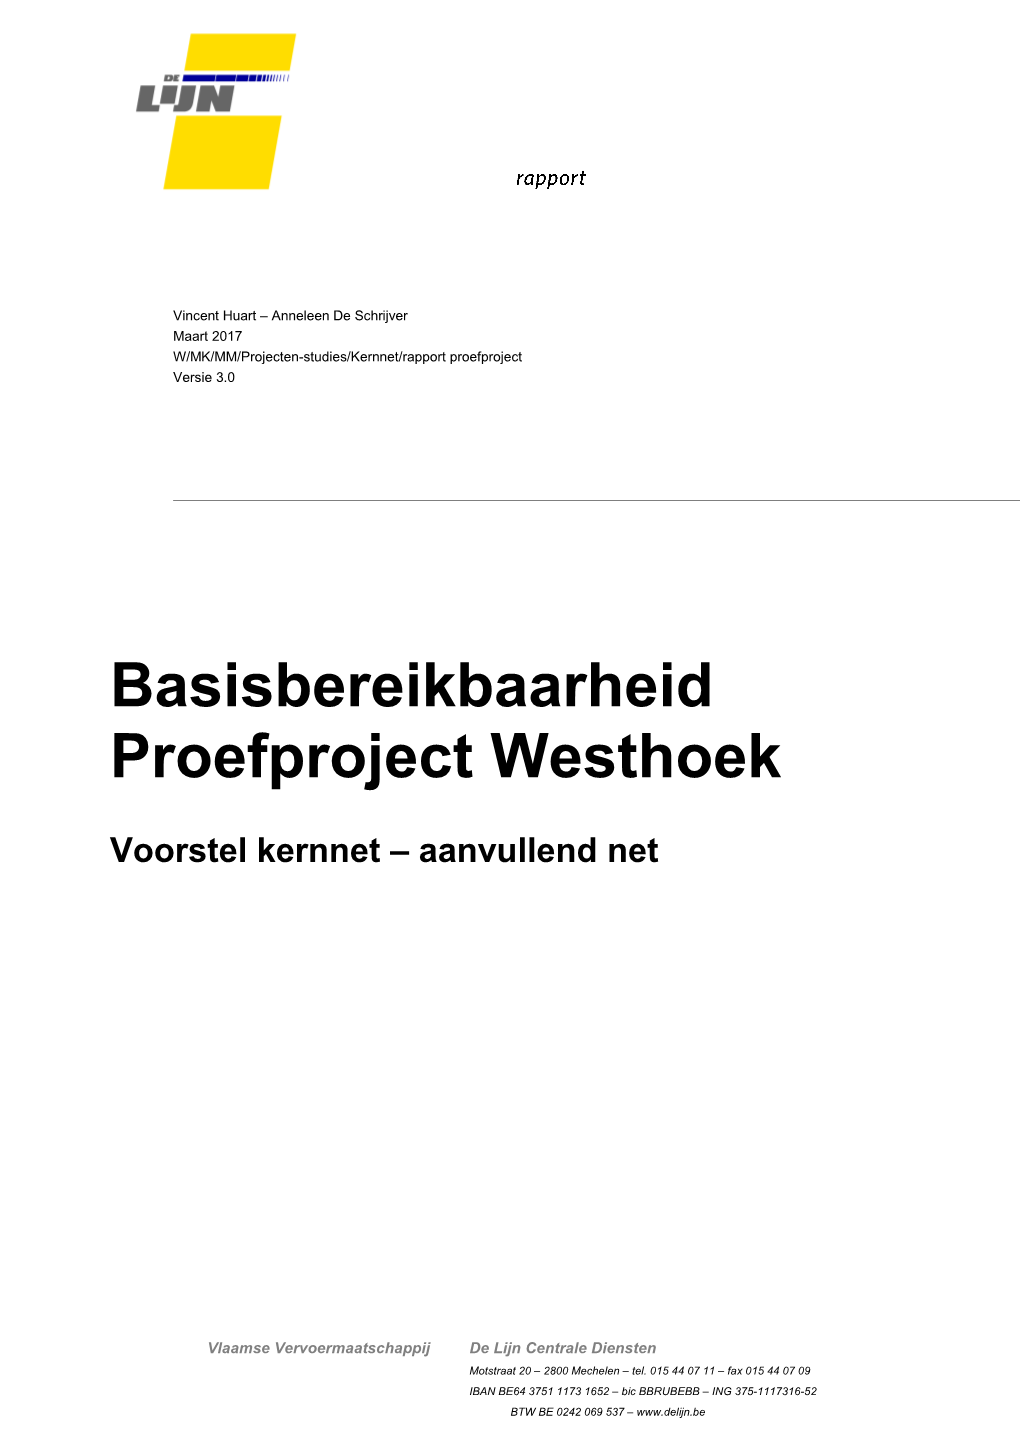 Basisbereikbaarheid Proefproject Westhoek